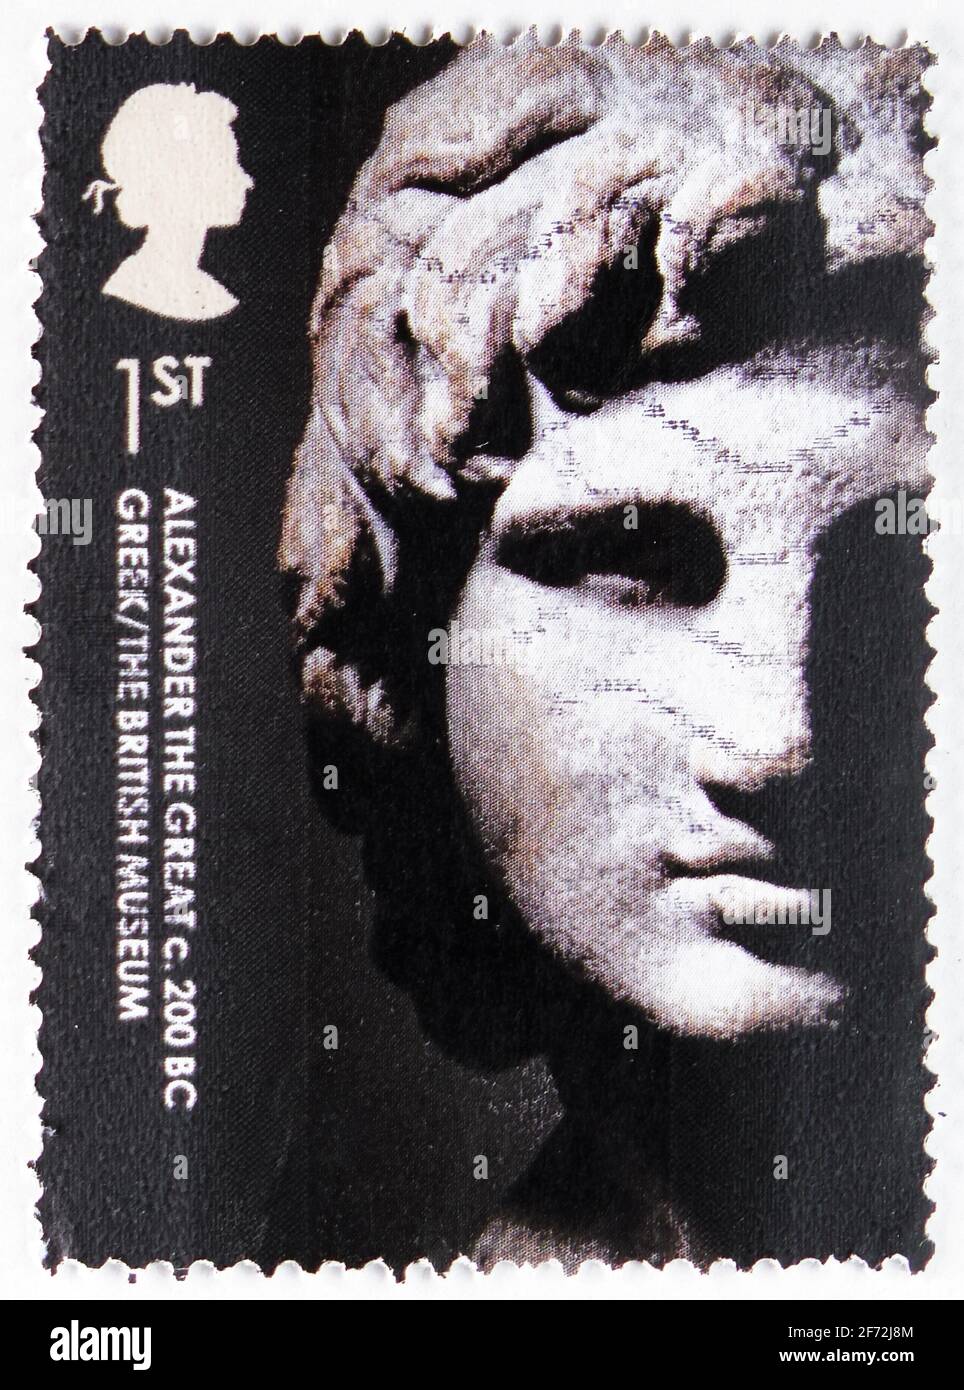 MOSCOU, RUSSIE - 22 DÉCEMBRE 2020 : le timbre-poste imprimé au Royaume-Uni montre Alexandre le Grand, grec, c. 200 Banque D'Images